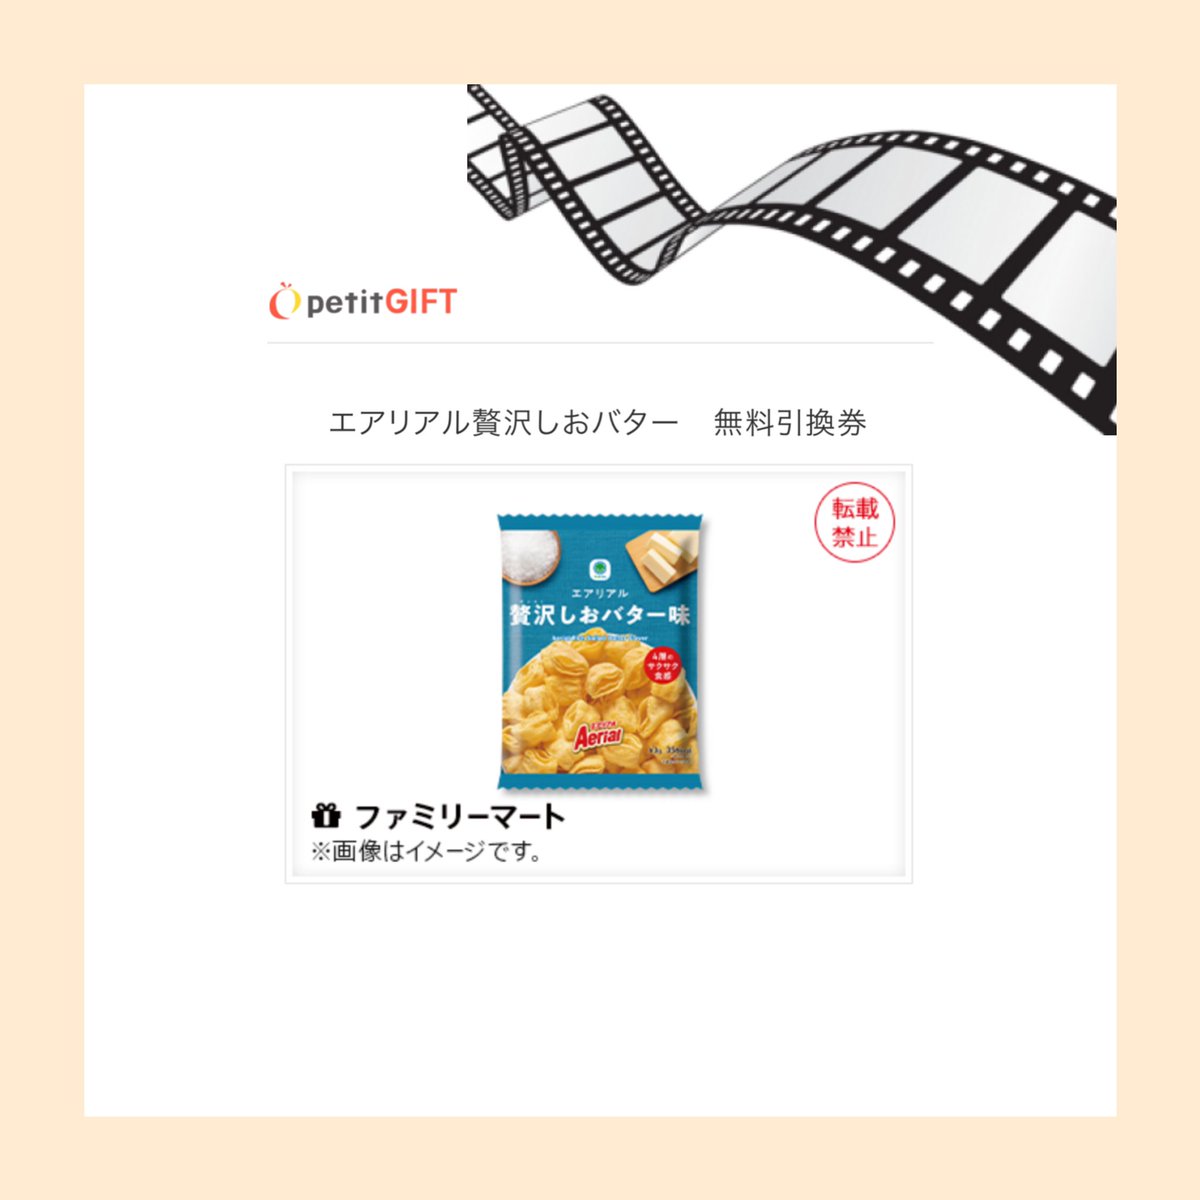 Netflix Japan様( @NetflixJP )の
ゴールデデーンクイズで
エアリアル贅沢しおバター味当選💛🤍
ありがとうございます🫶🏻

やっぱり映画やドラマを見るときは
スナック菓子とジュース🎬🍿🥤

何見ながら食べようかな〜😋💗

#きなの当選報告 284